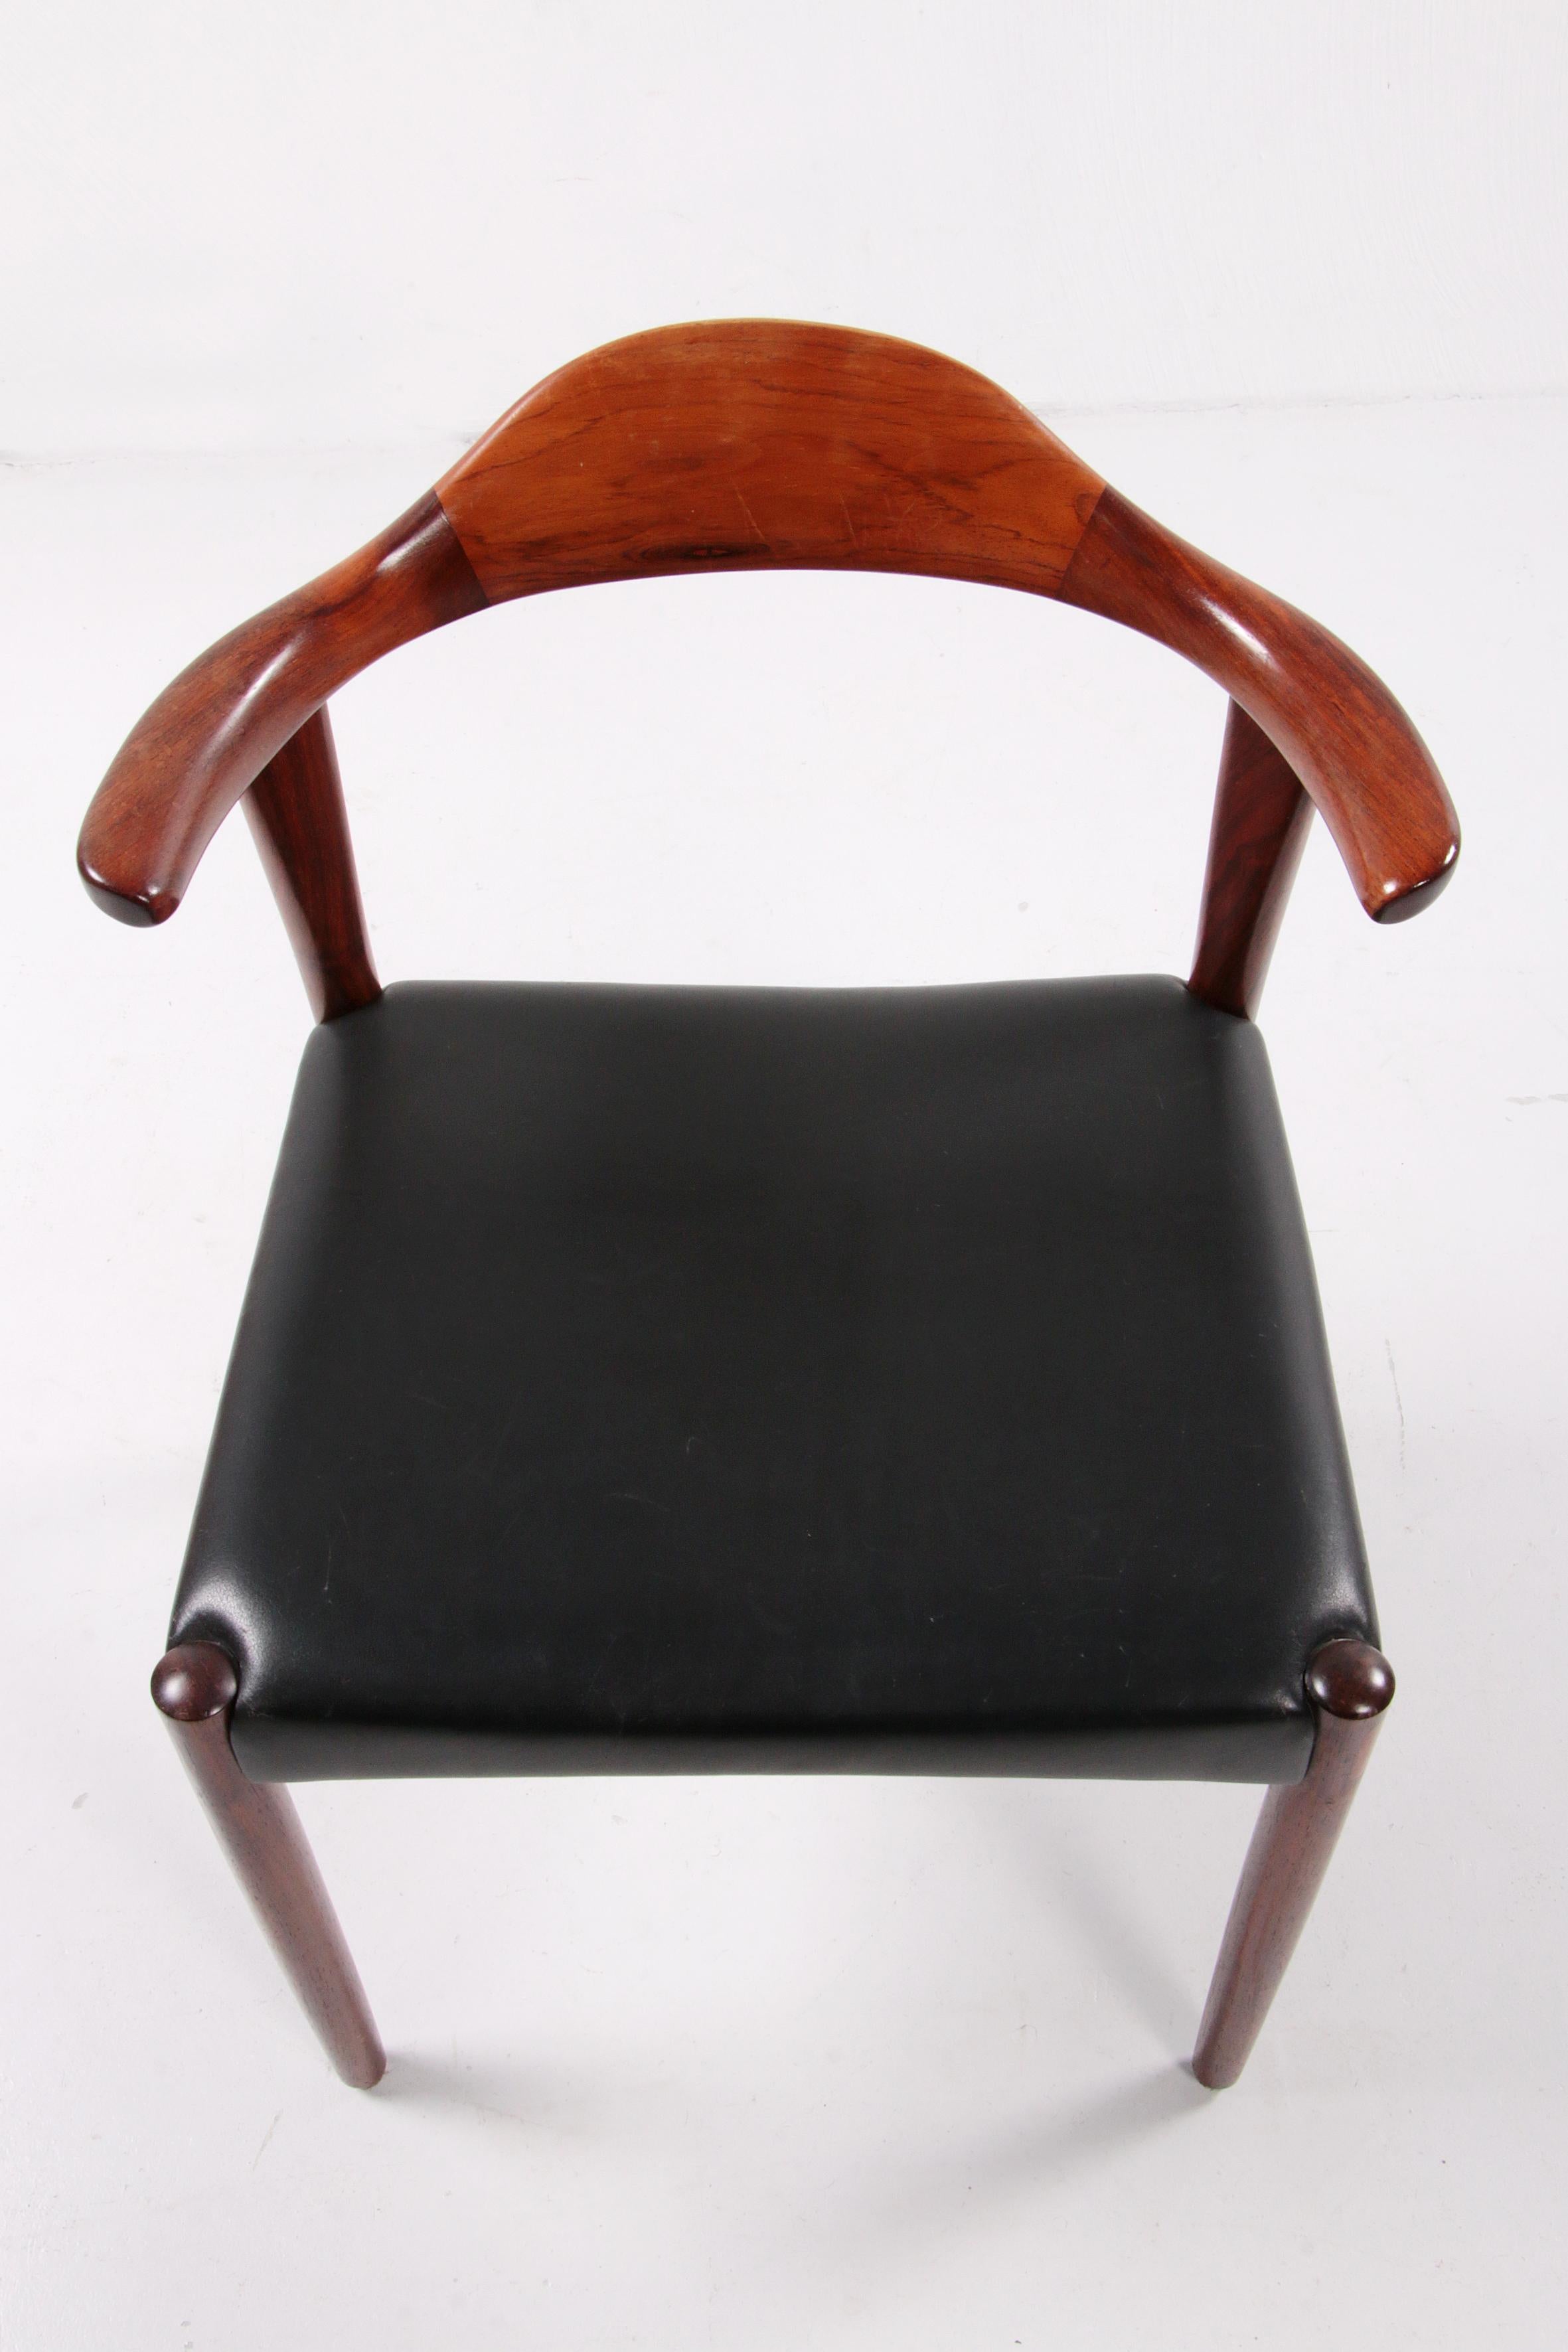 Jacob Hermann Dark Wood Dining Room Chairs Randers Mobelfabriek, 1965 For Sale 3